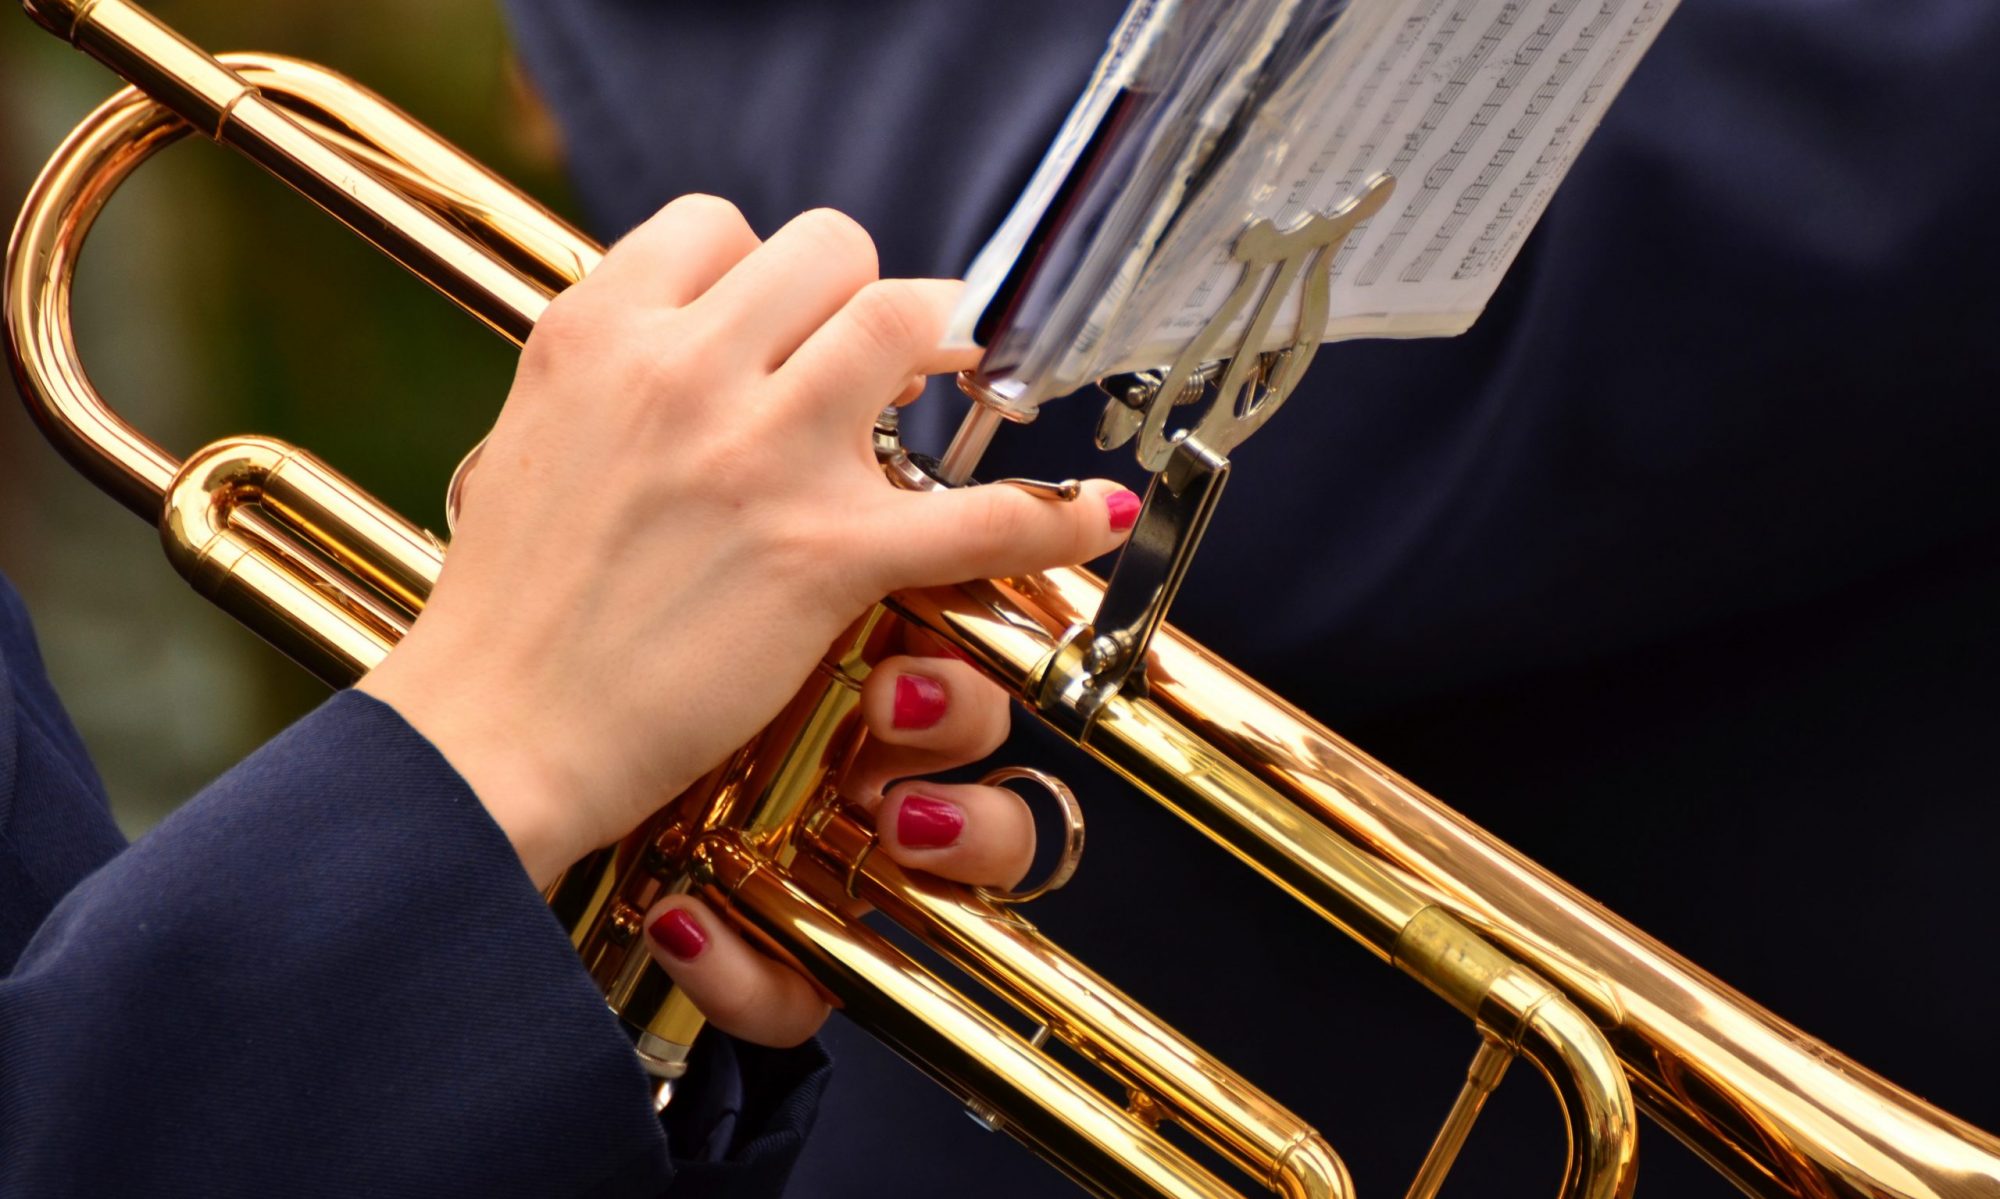 Pa's Brass Band